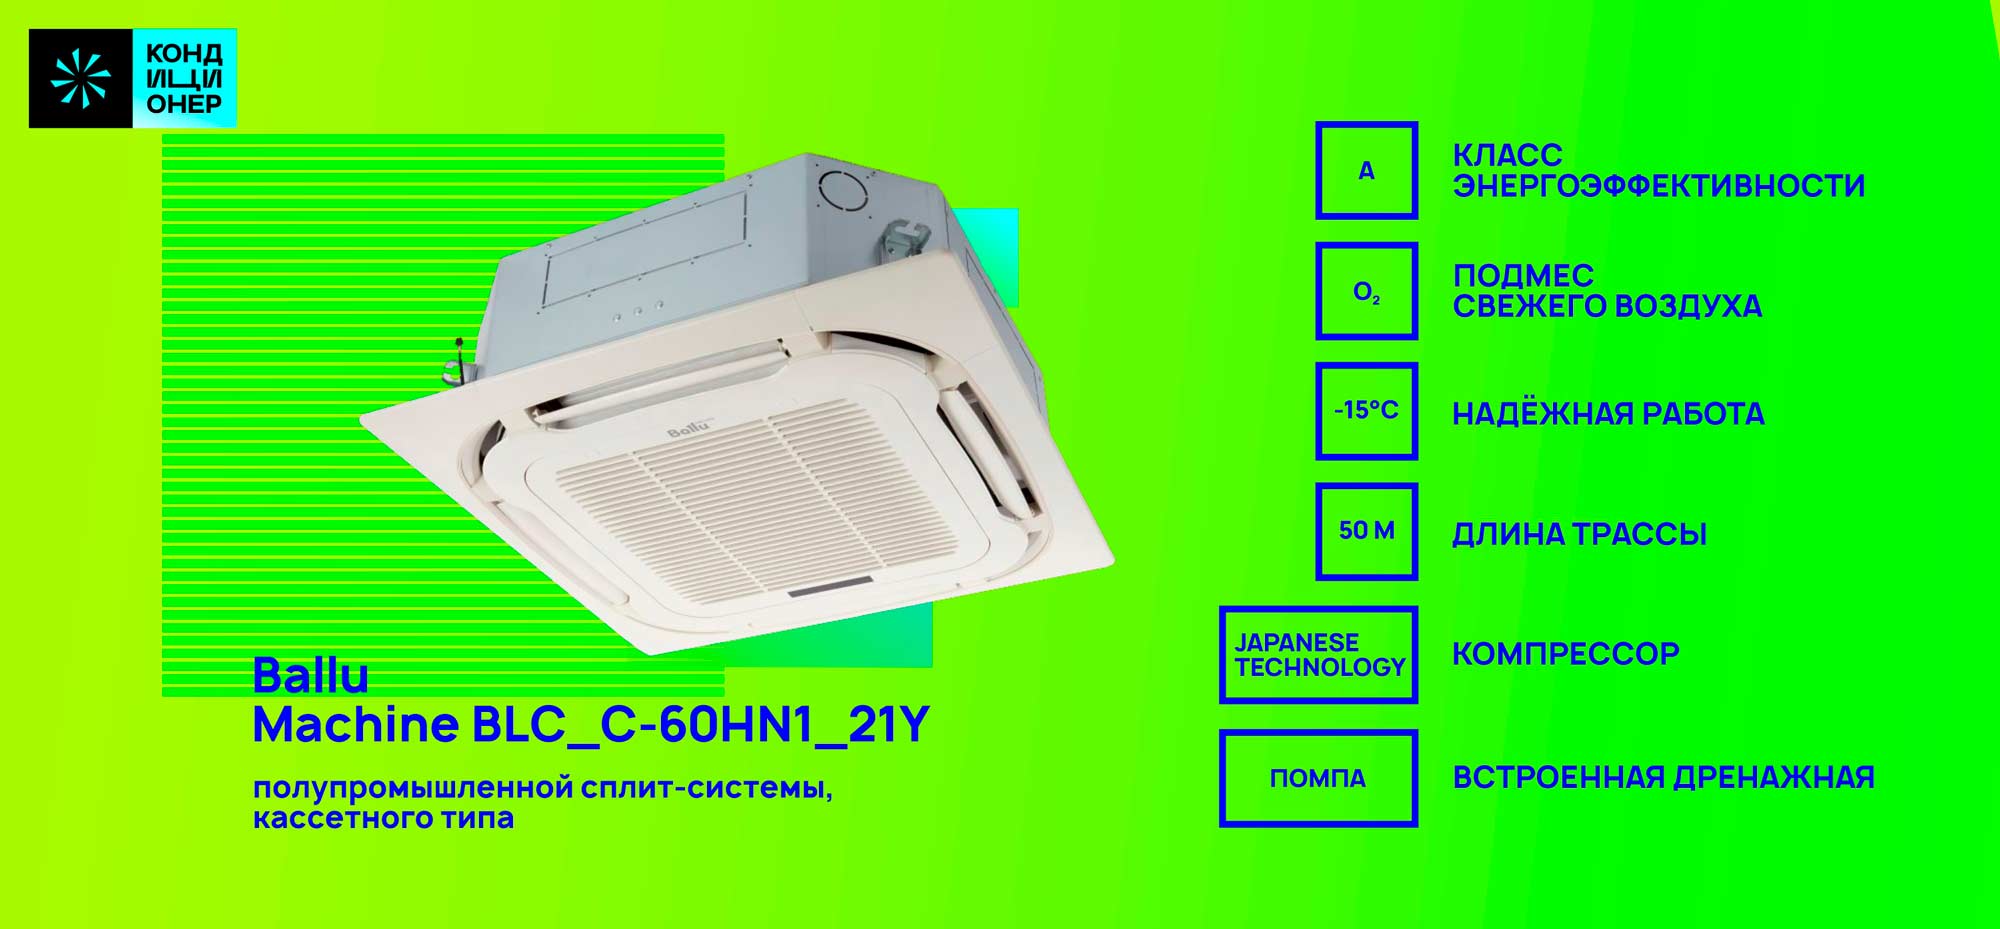 BALLU Machine BLC_C-60HN1_33